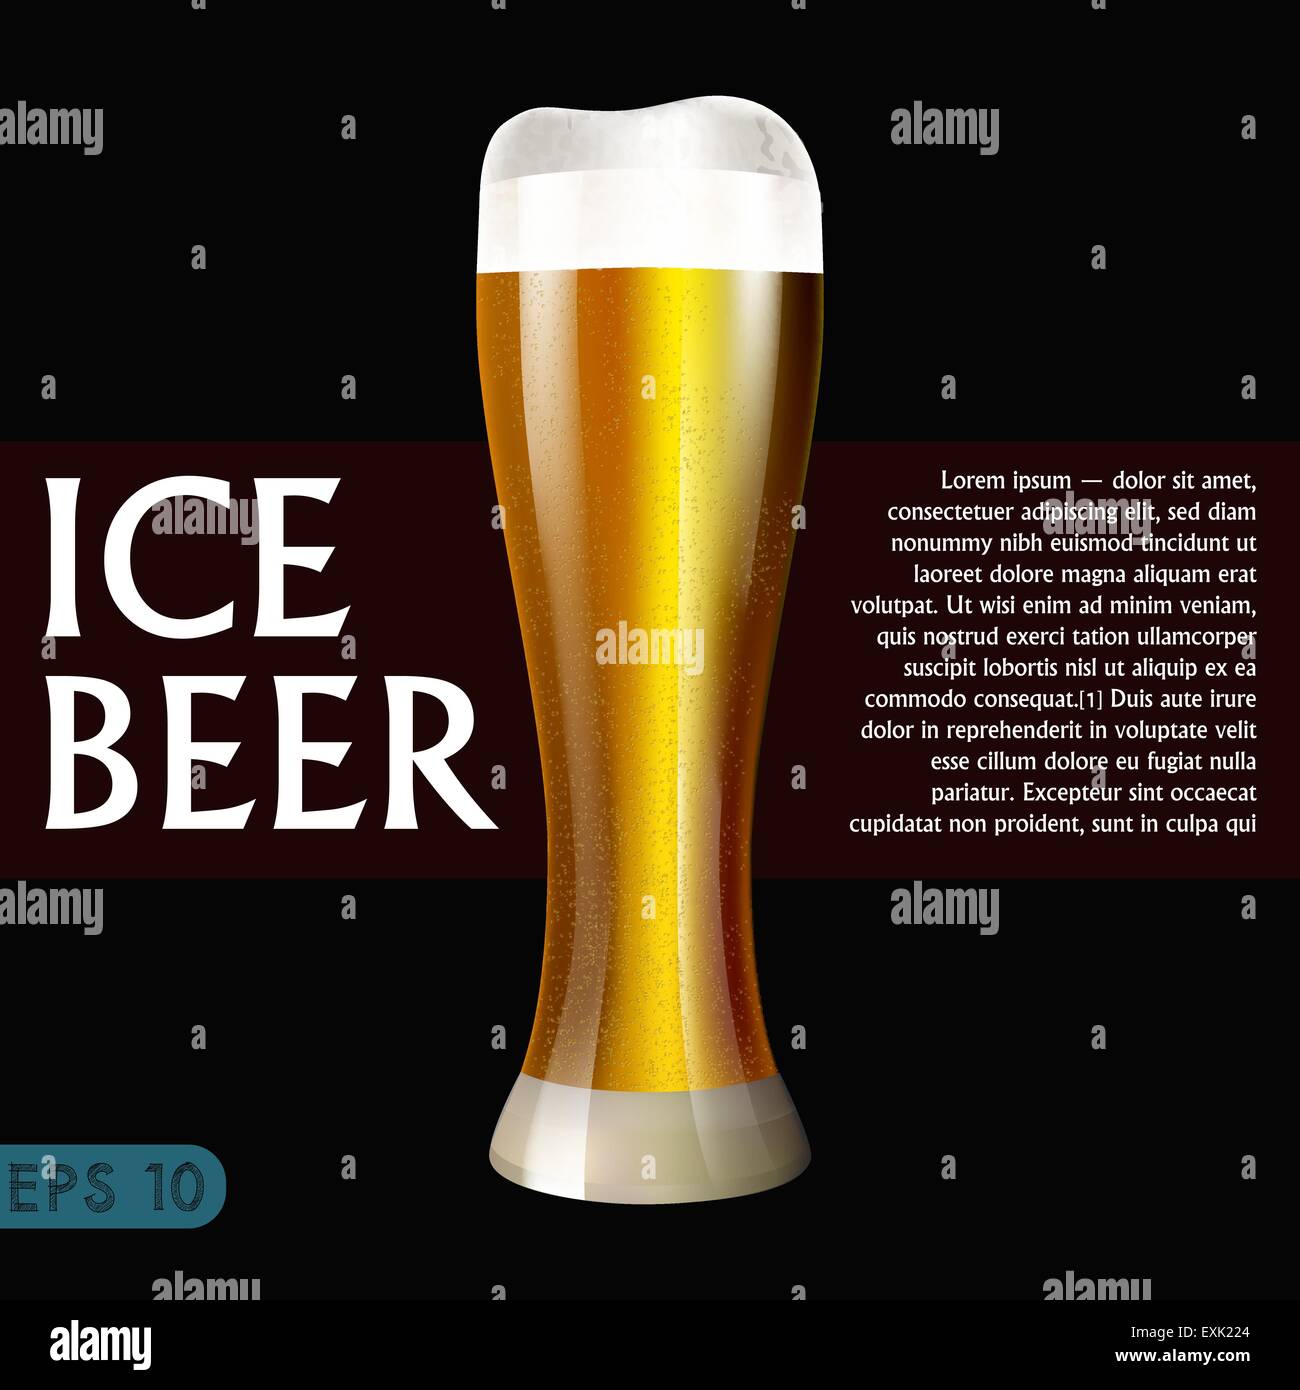 beer glass design menu background Stock Vector Art & Illustration ...